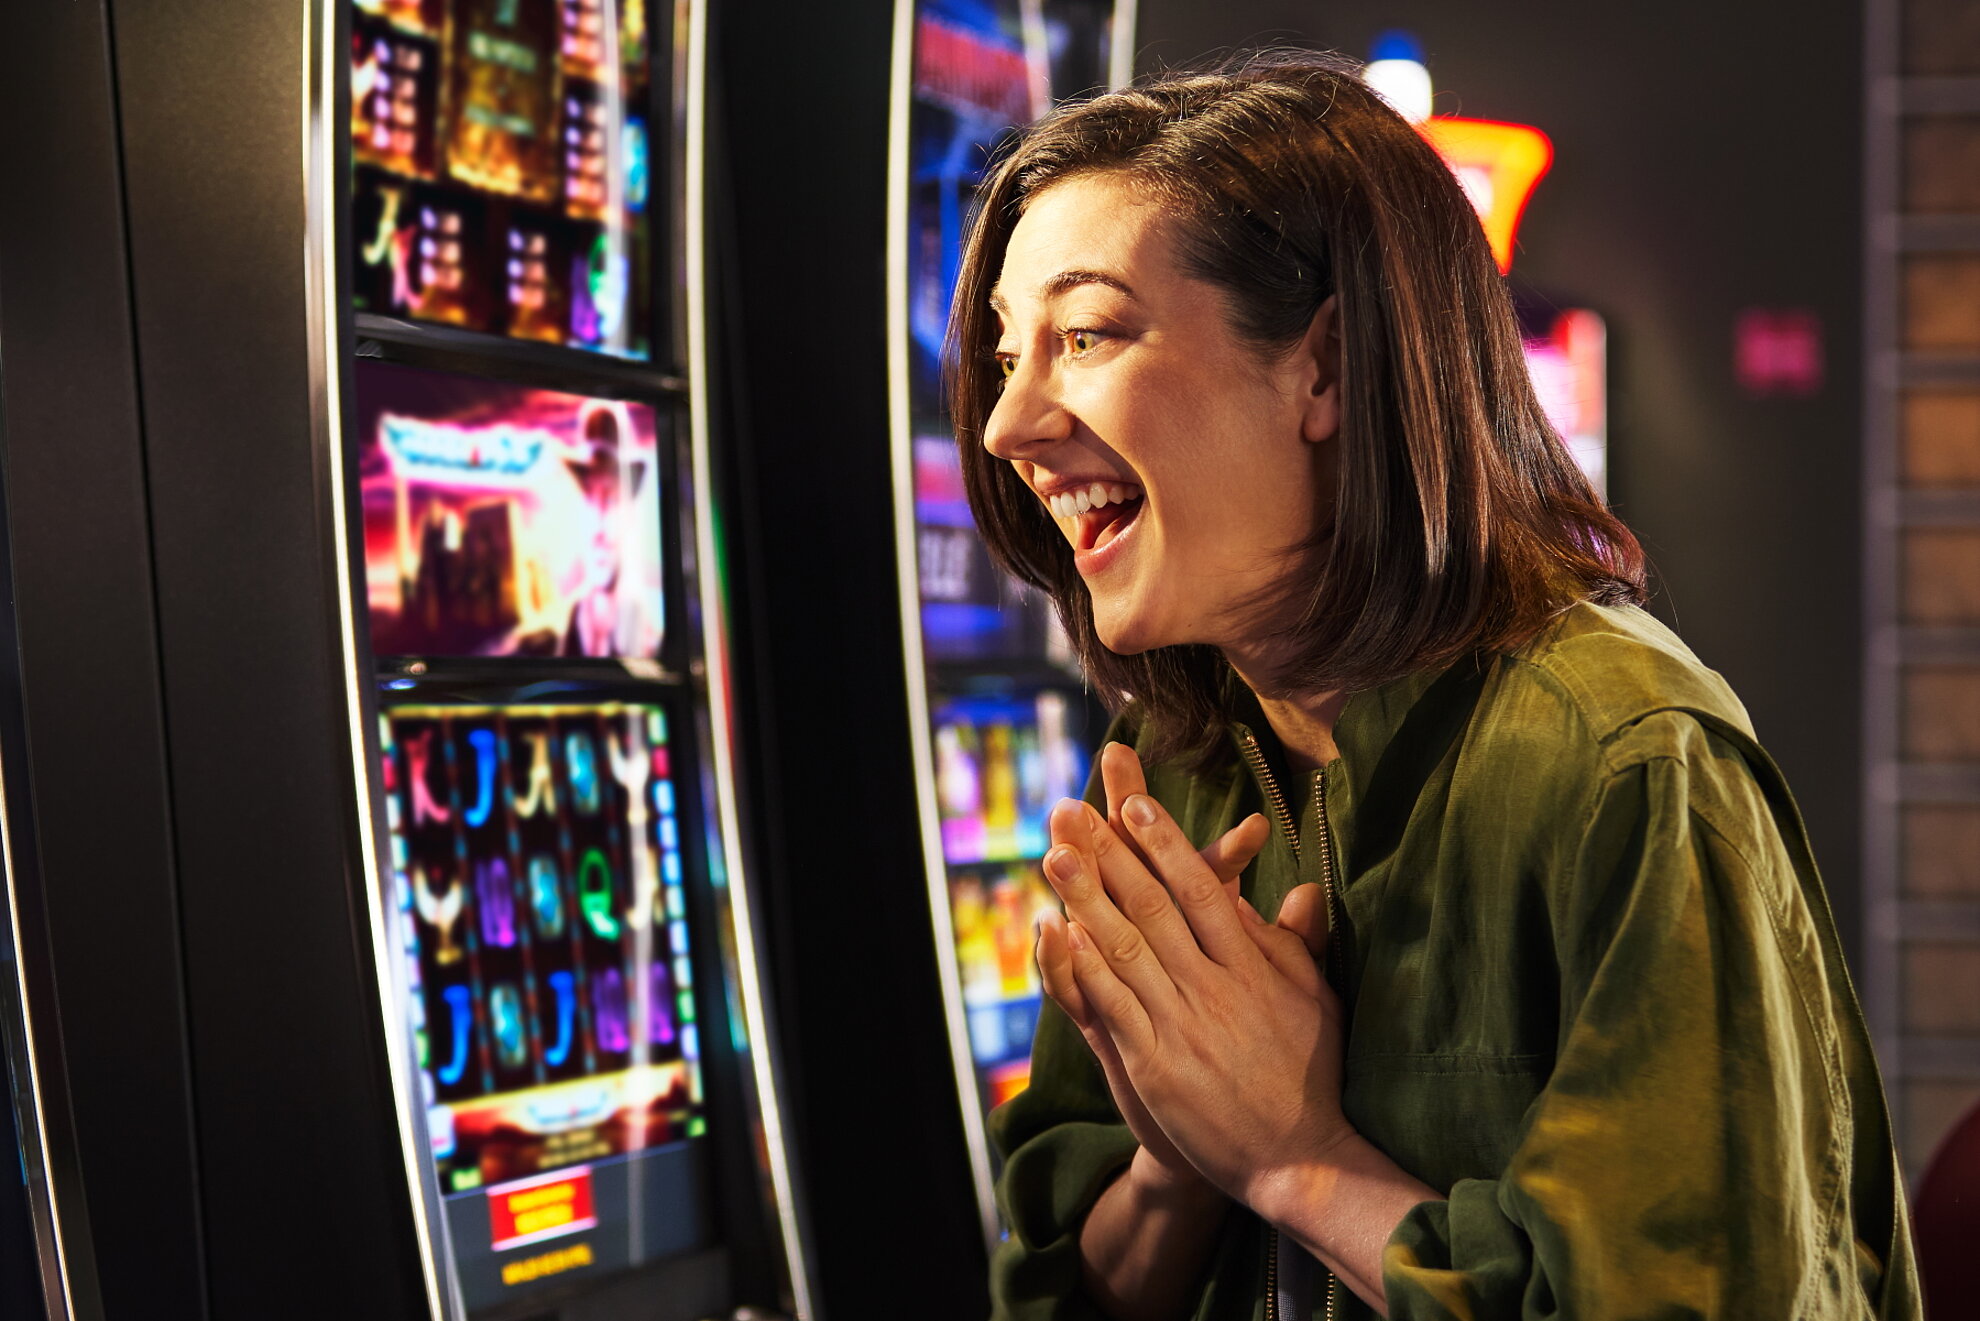 Junge Frau mit schwarzem Haar freut sich vor Spielautomat.